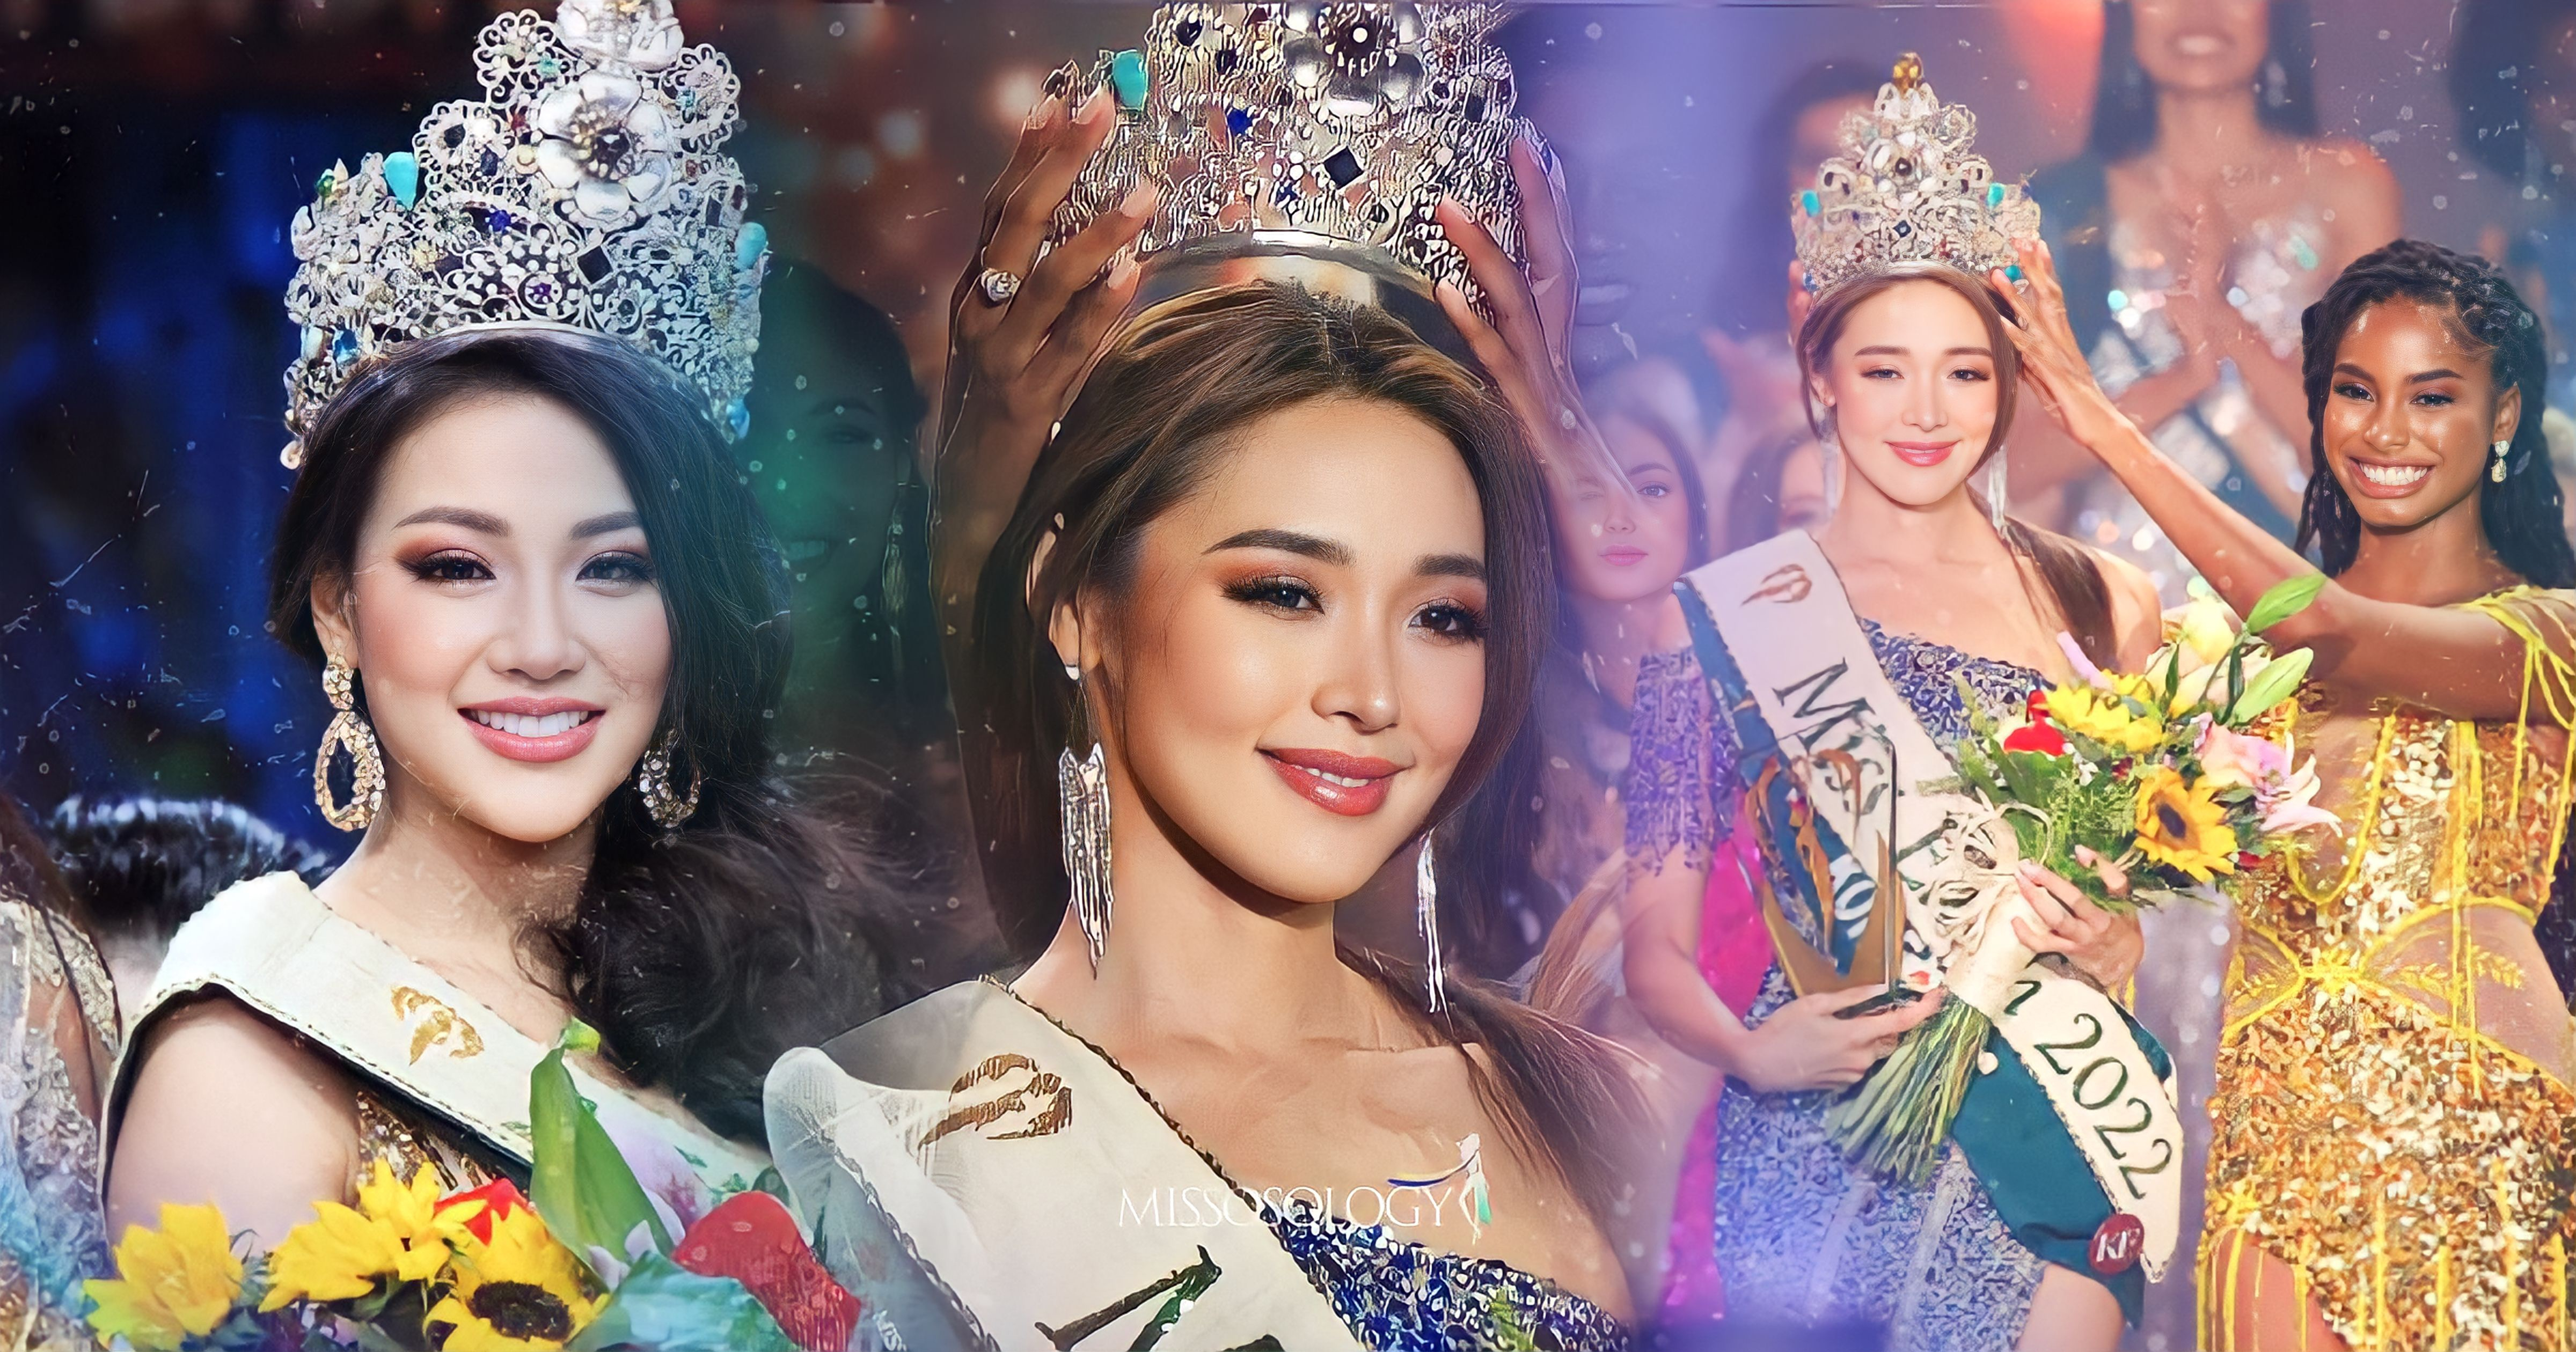 Miss Earth 2022 - Mina Sue Choi ngưỡng mộ hoa hậu Phương Khánh: "Chị ấy rất chân thật và tự nhiên"